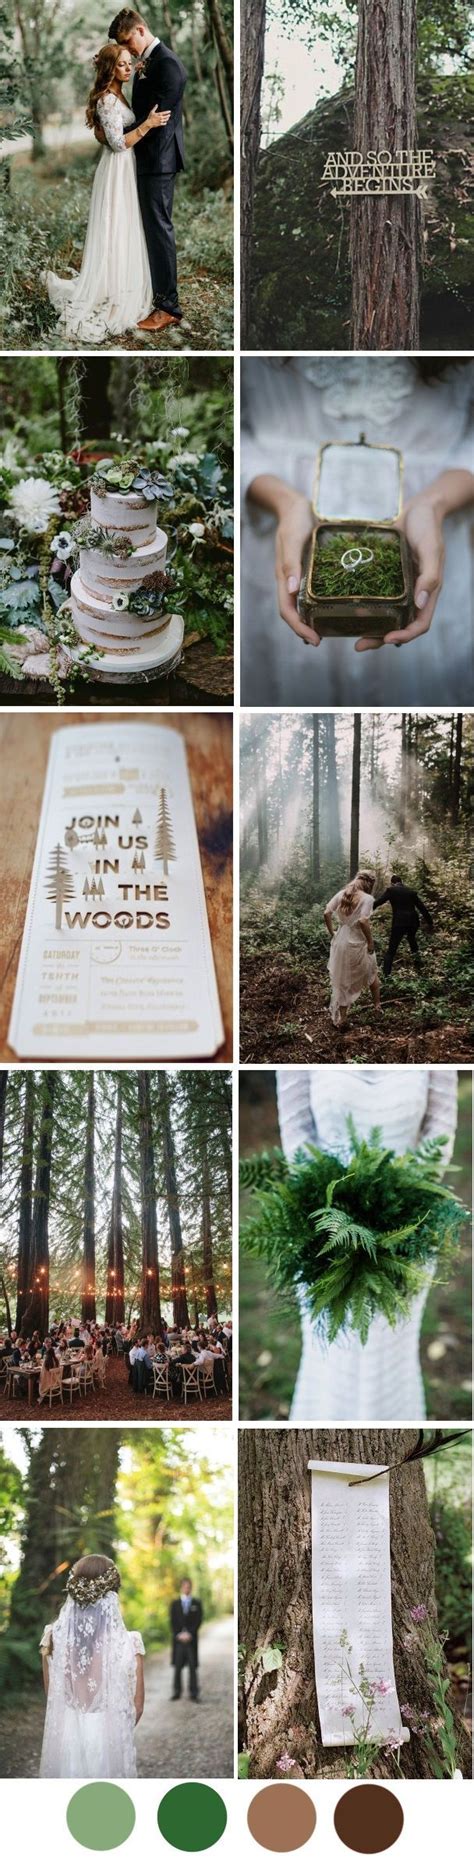 Hochzeit Unter B Umen Im Wald Enchanted Forest Wedding Theme Woodland